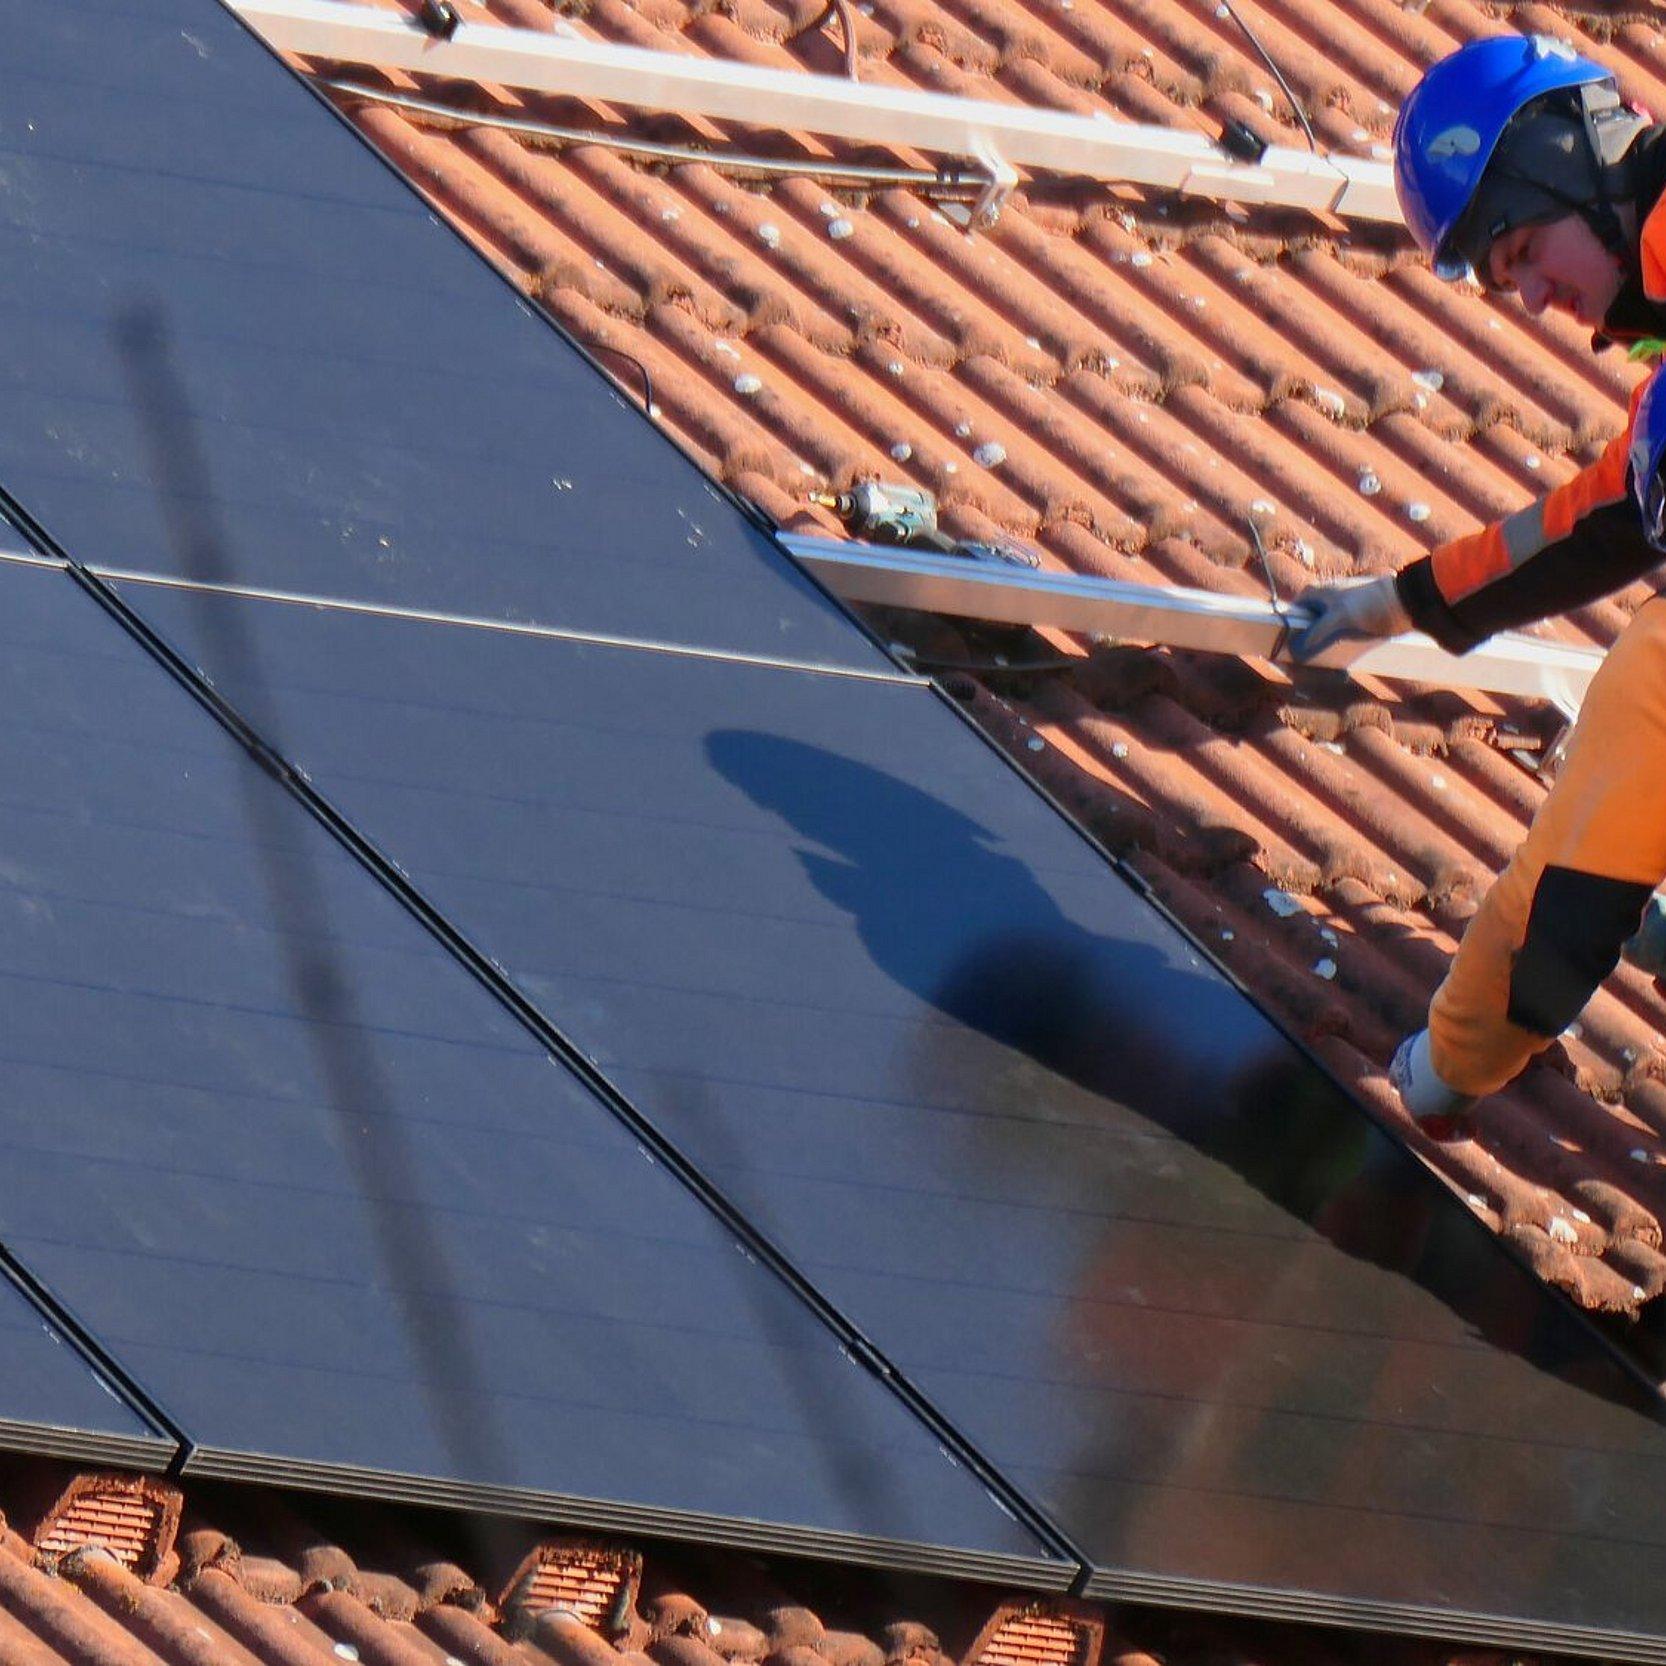 Zwei Handwerker installieren eine Solaranlage auf einem Hausdach. Die Handwerker tragen Bereufskleidung und Helme zur Sicherheit.